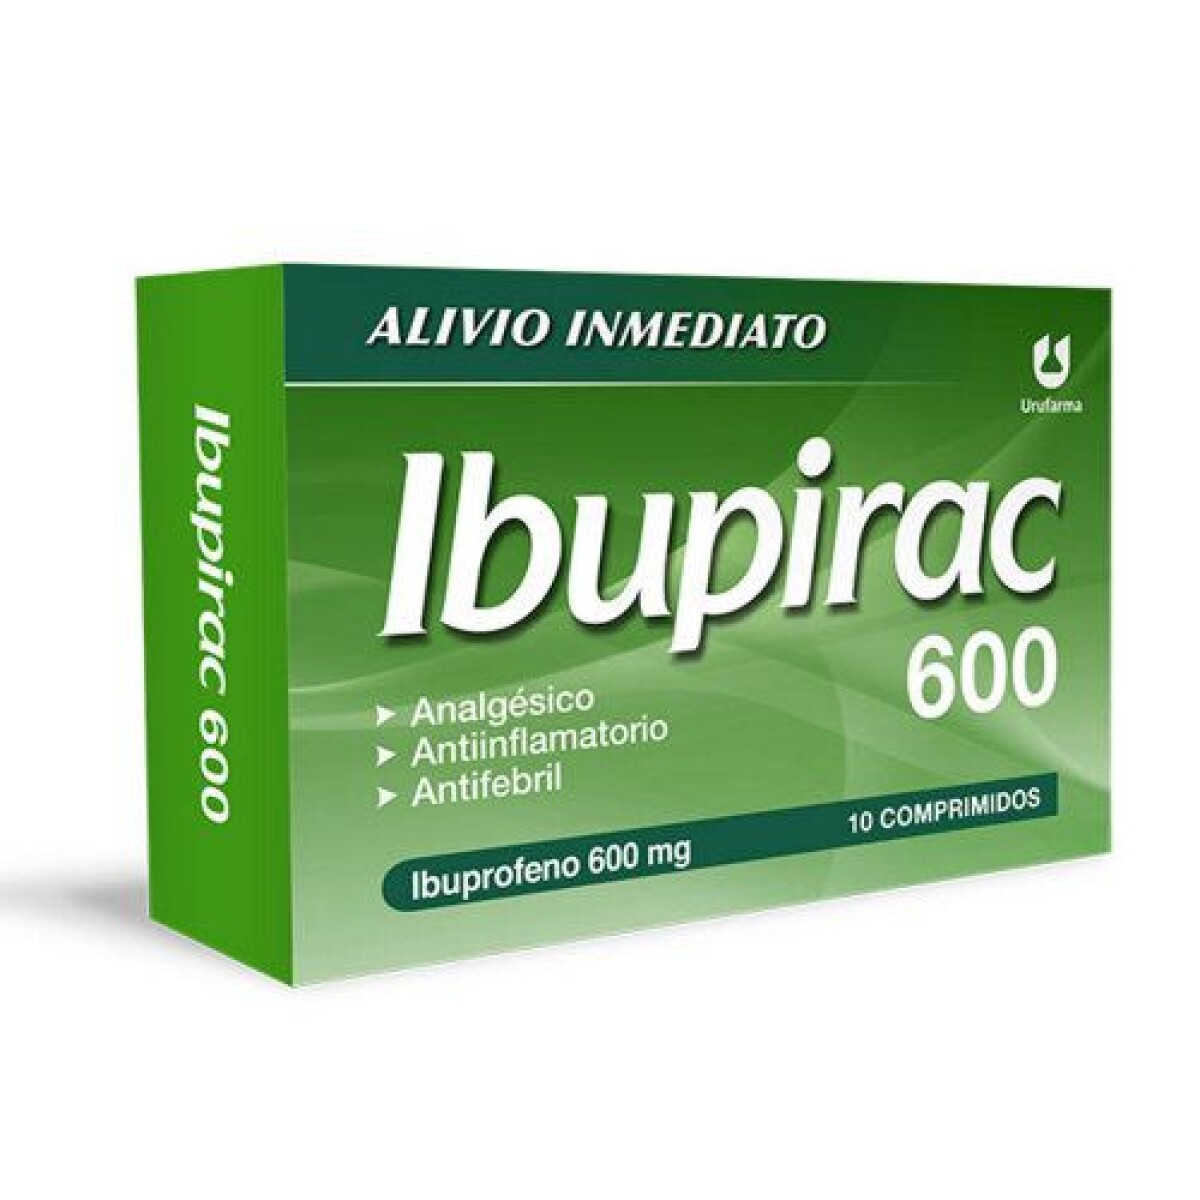 Ibupirac 600 mg 10 comprimidos. 